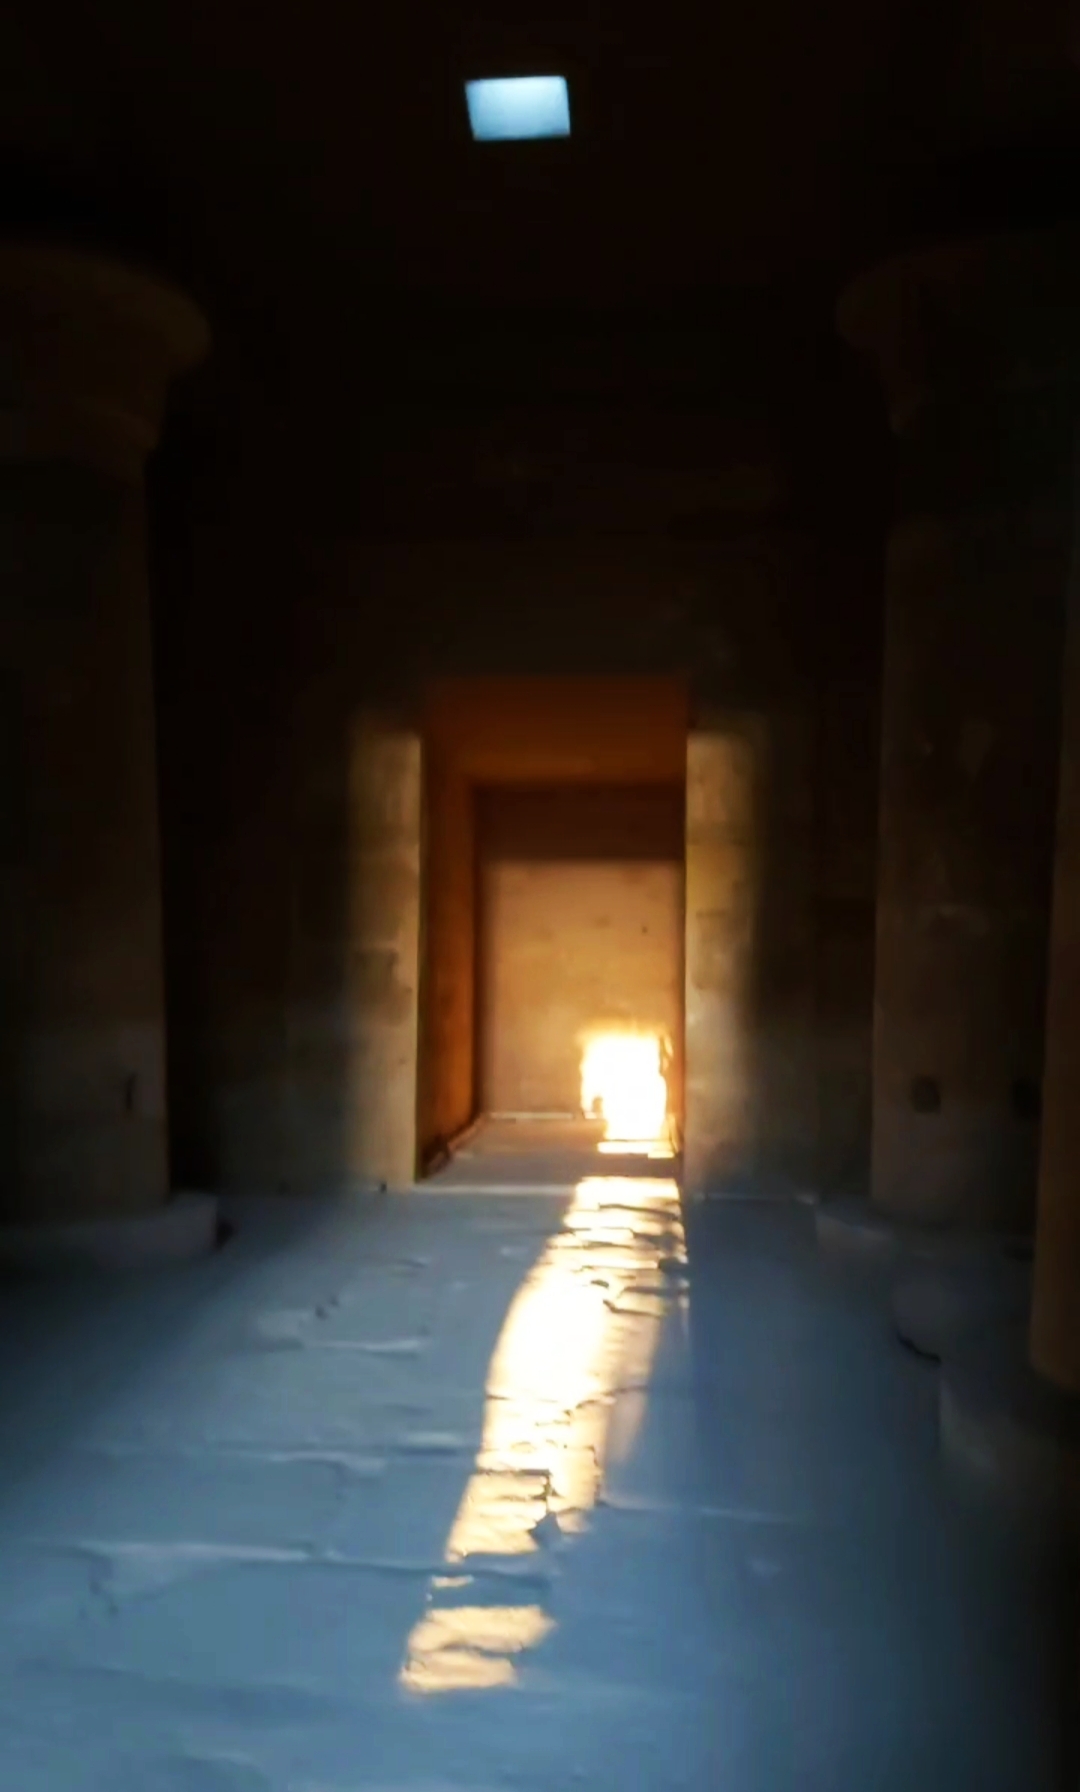 البحوث الفلكية ترصد ظاهرة تعامد الشمس على قدس الأقداس بمعبد هيبس بالوادى الجديد (2)